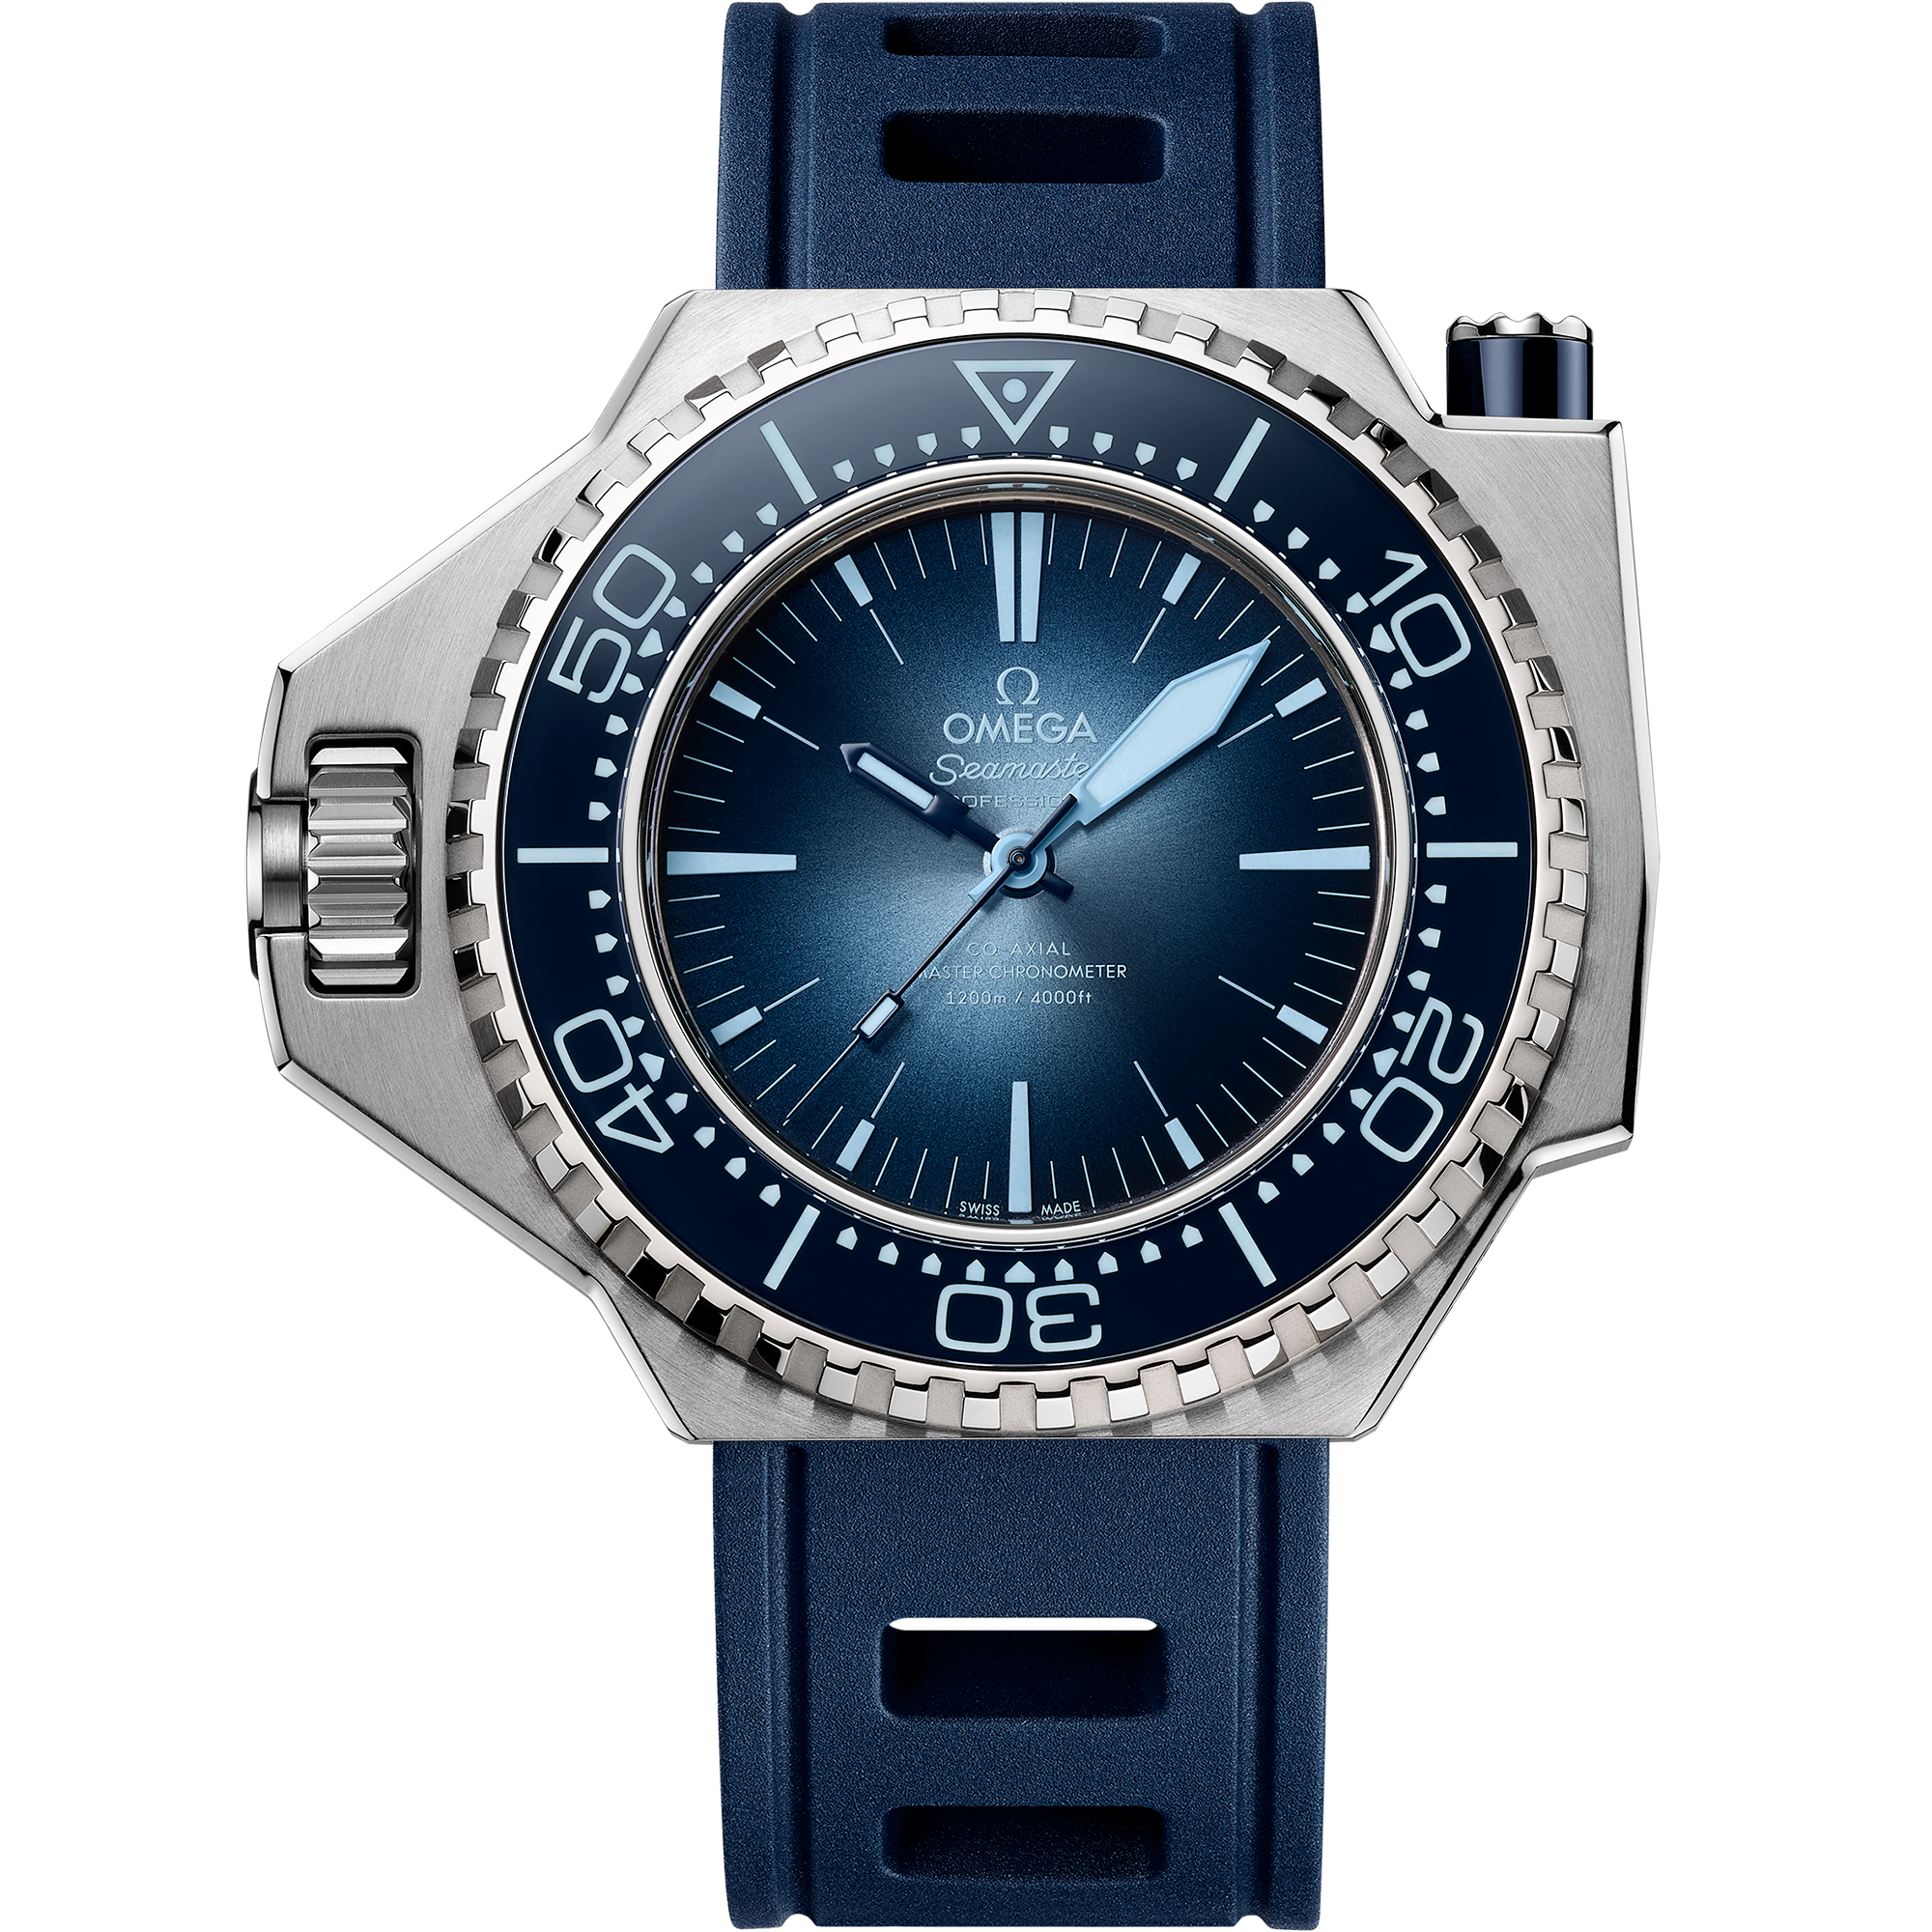 Uhr mit Blau Zifferblatt auf O-MEGASTEEL Gehäuse mit Kautschukband bracelet - Seamaster Ploprof 1200 M 55 x 45 mm, O-MEGASTEEL mit Kautschukband - 227.32.55.21.03.001